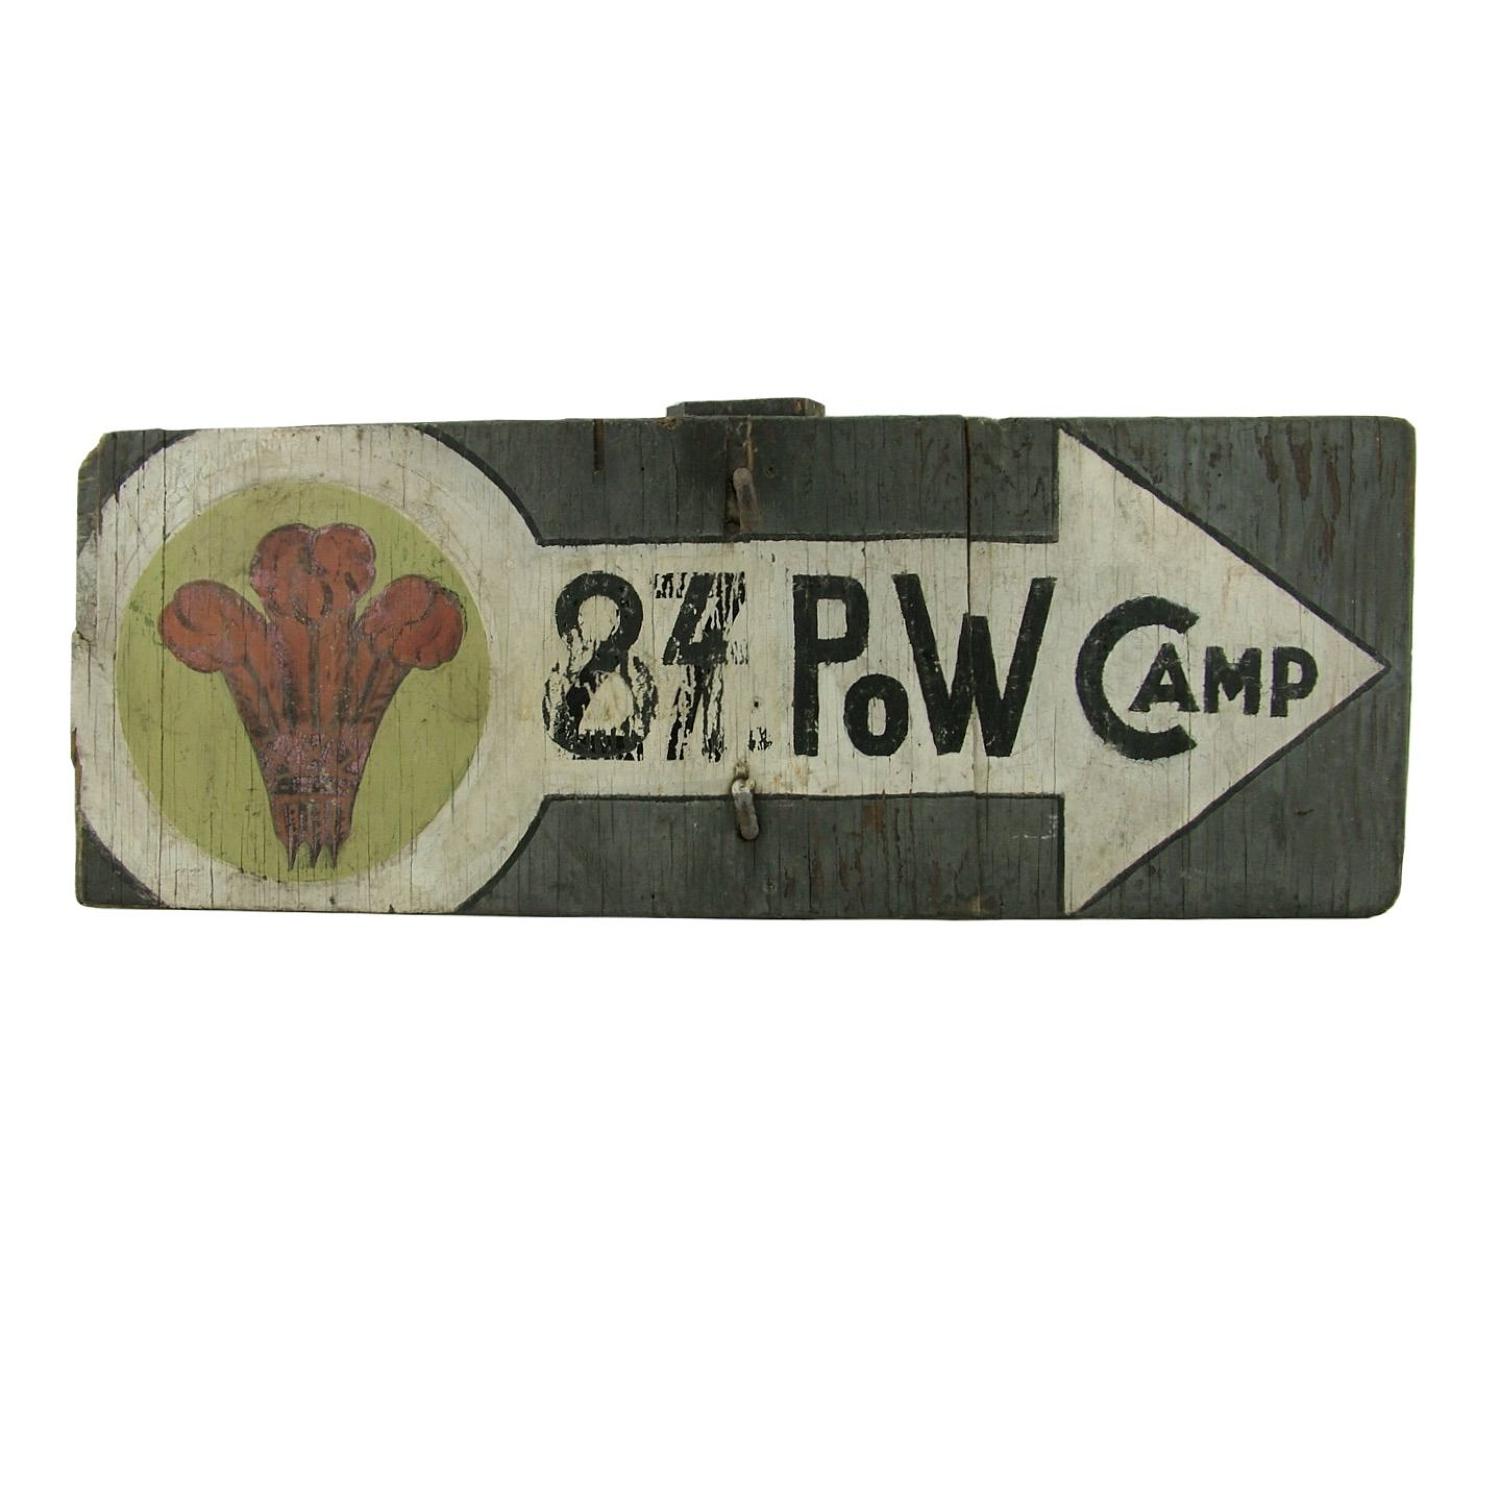 Original POW camp sign